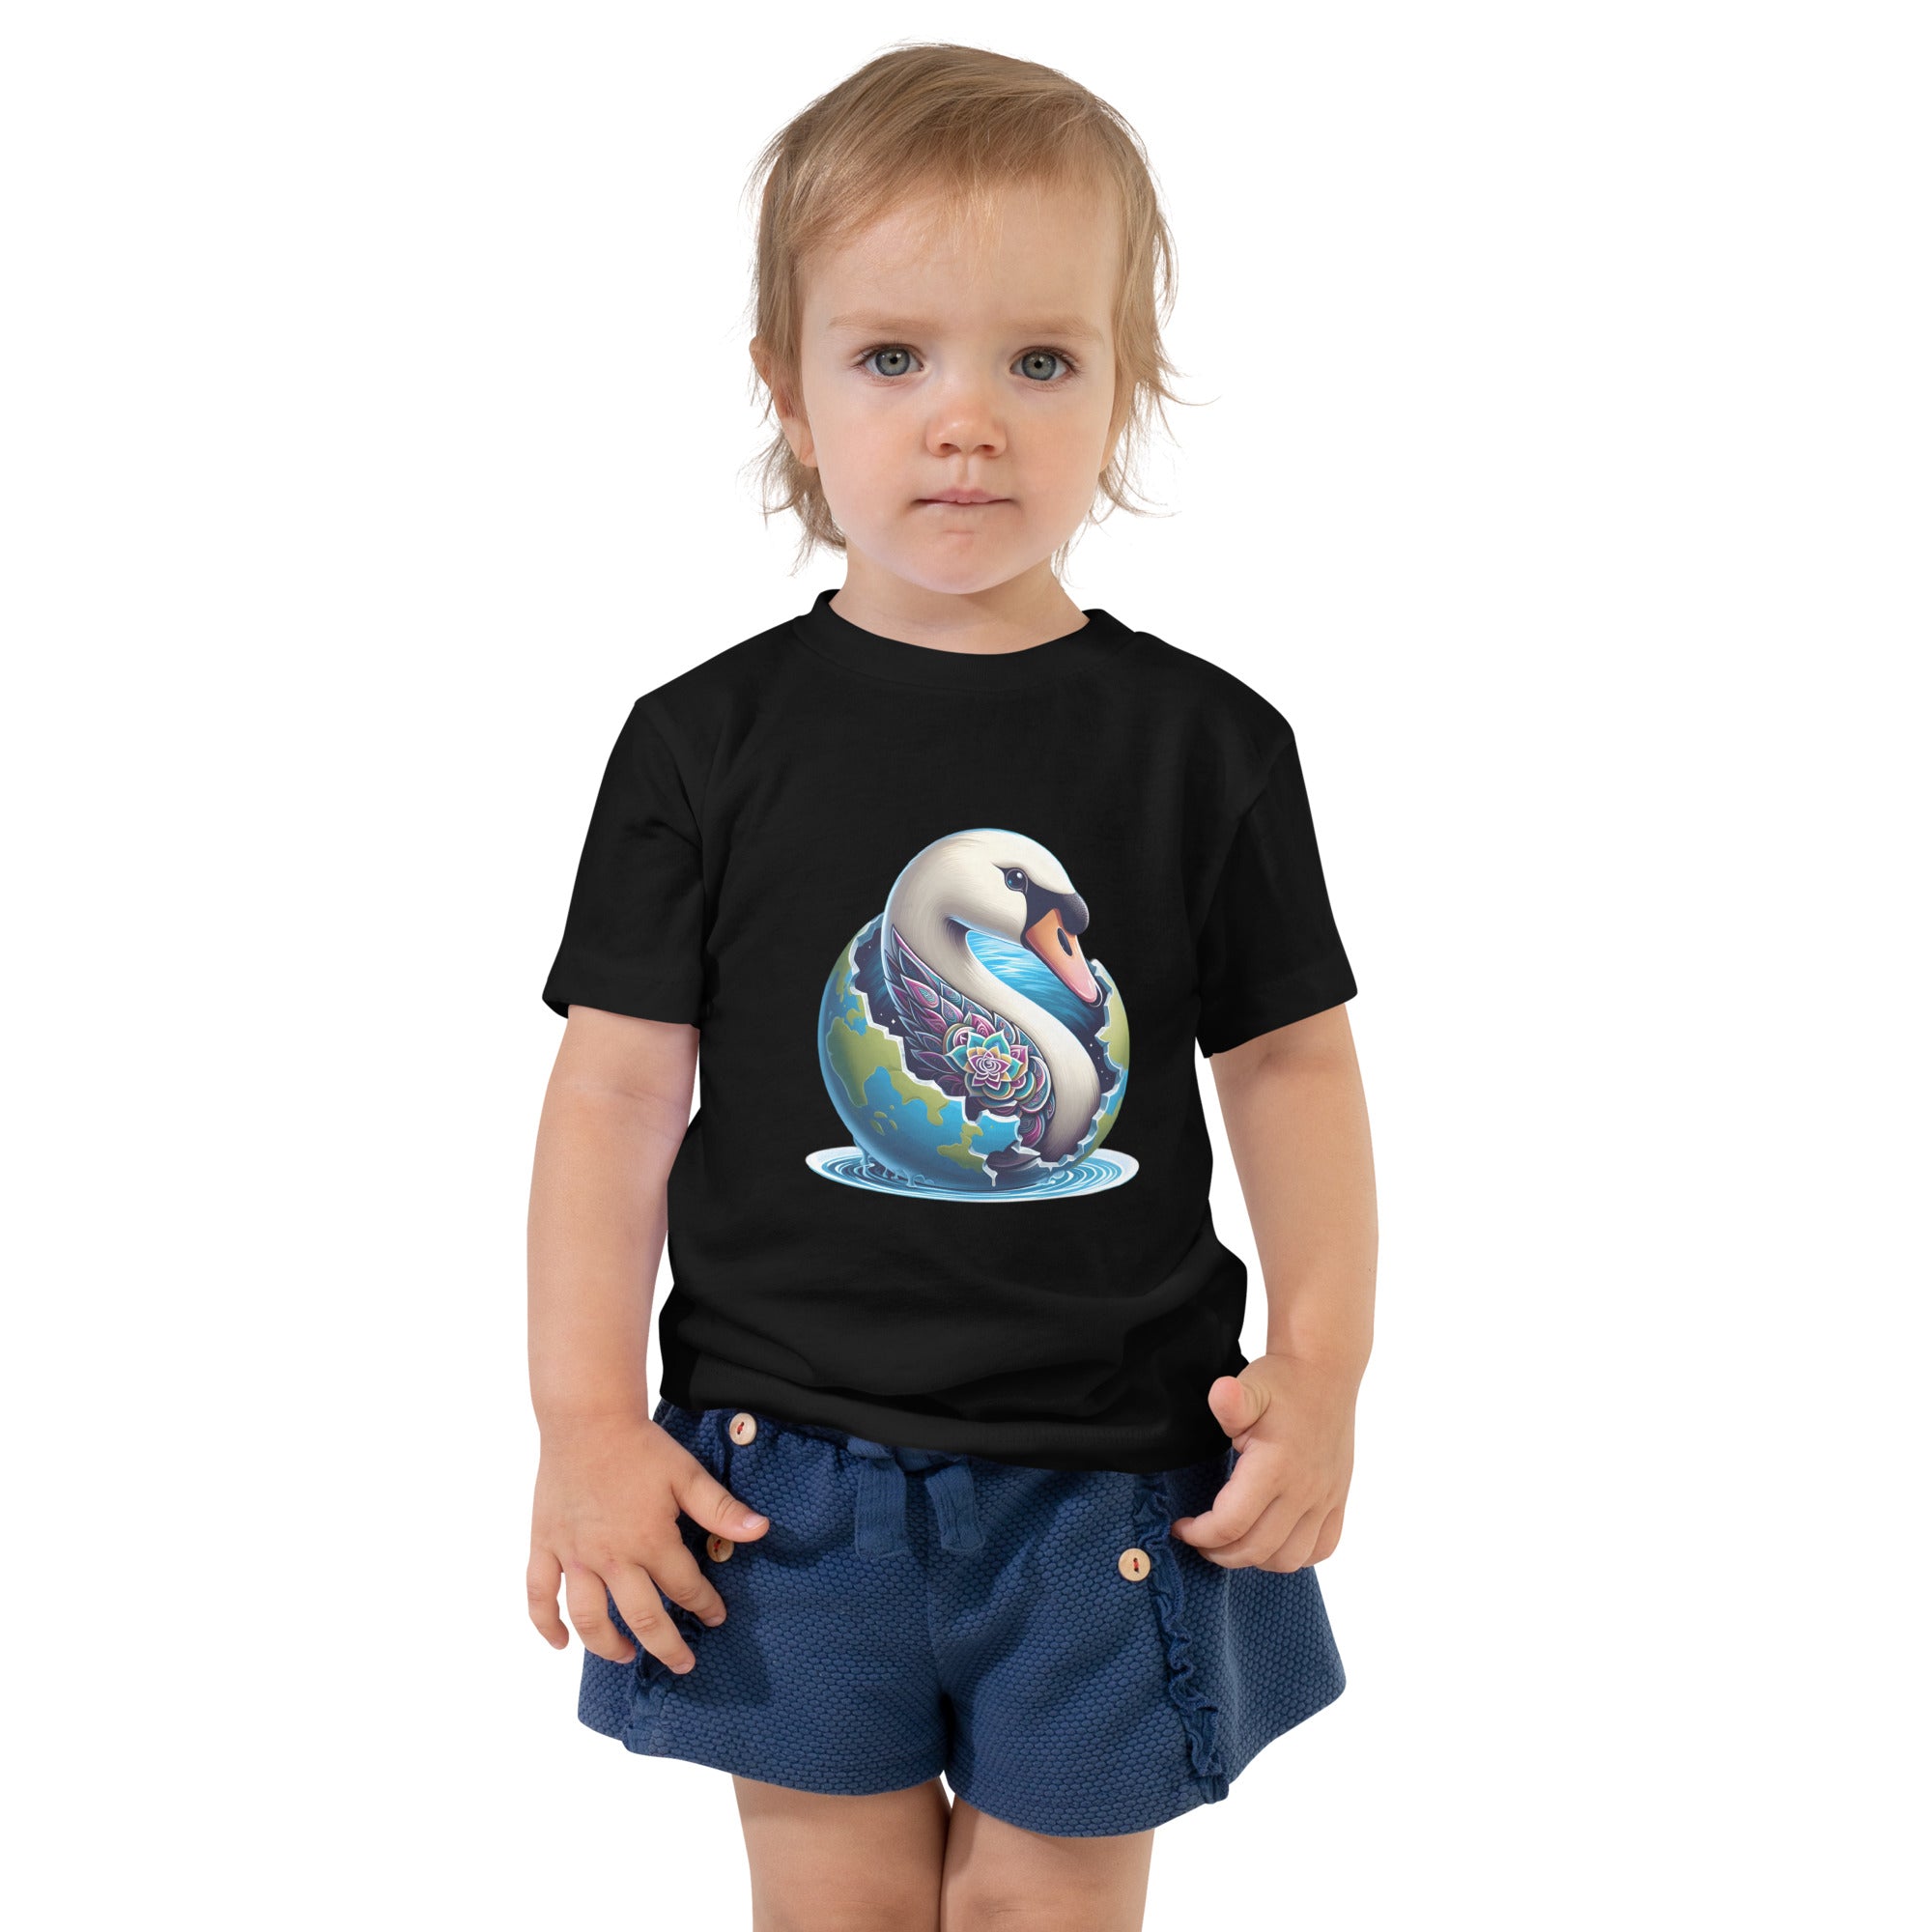 Swan World - Spiritual Animal Art Apparel Toddler Short Sleeve Tee